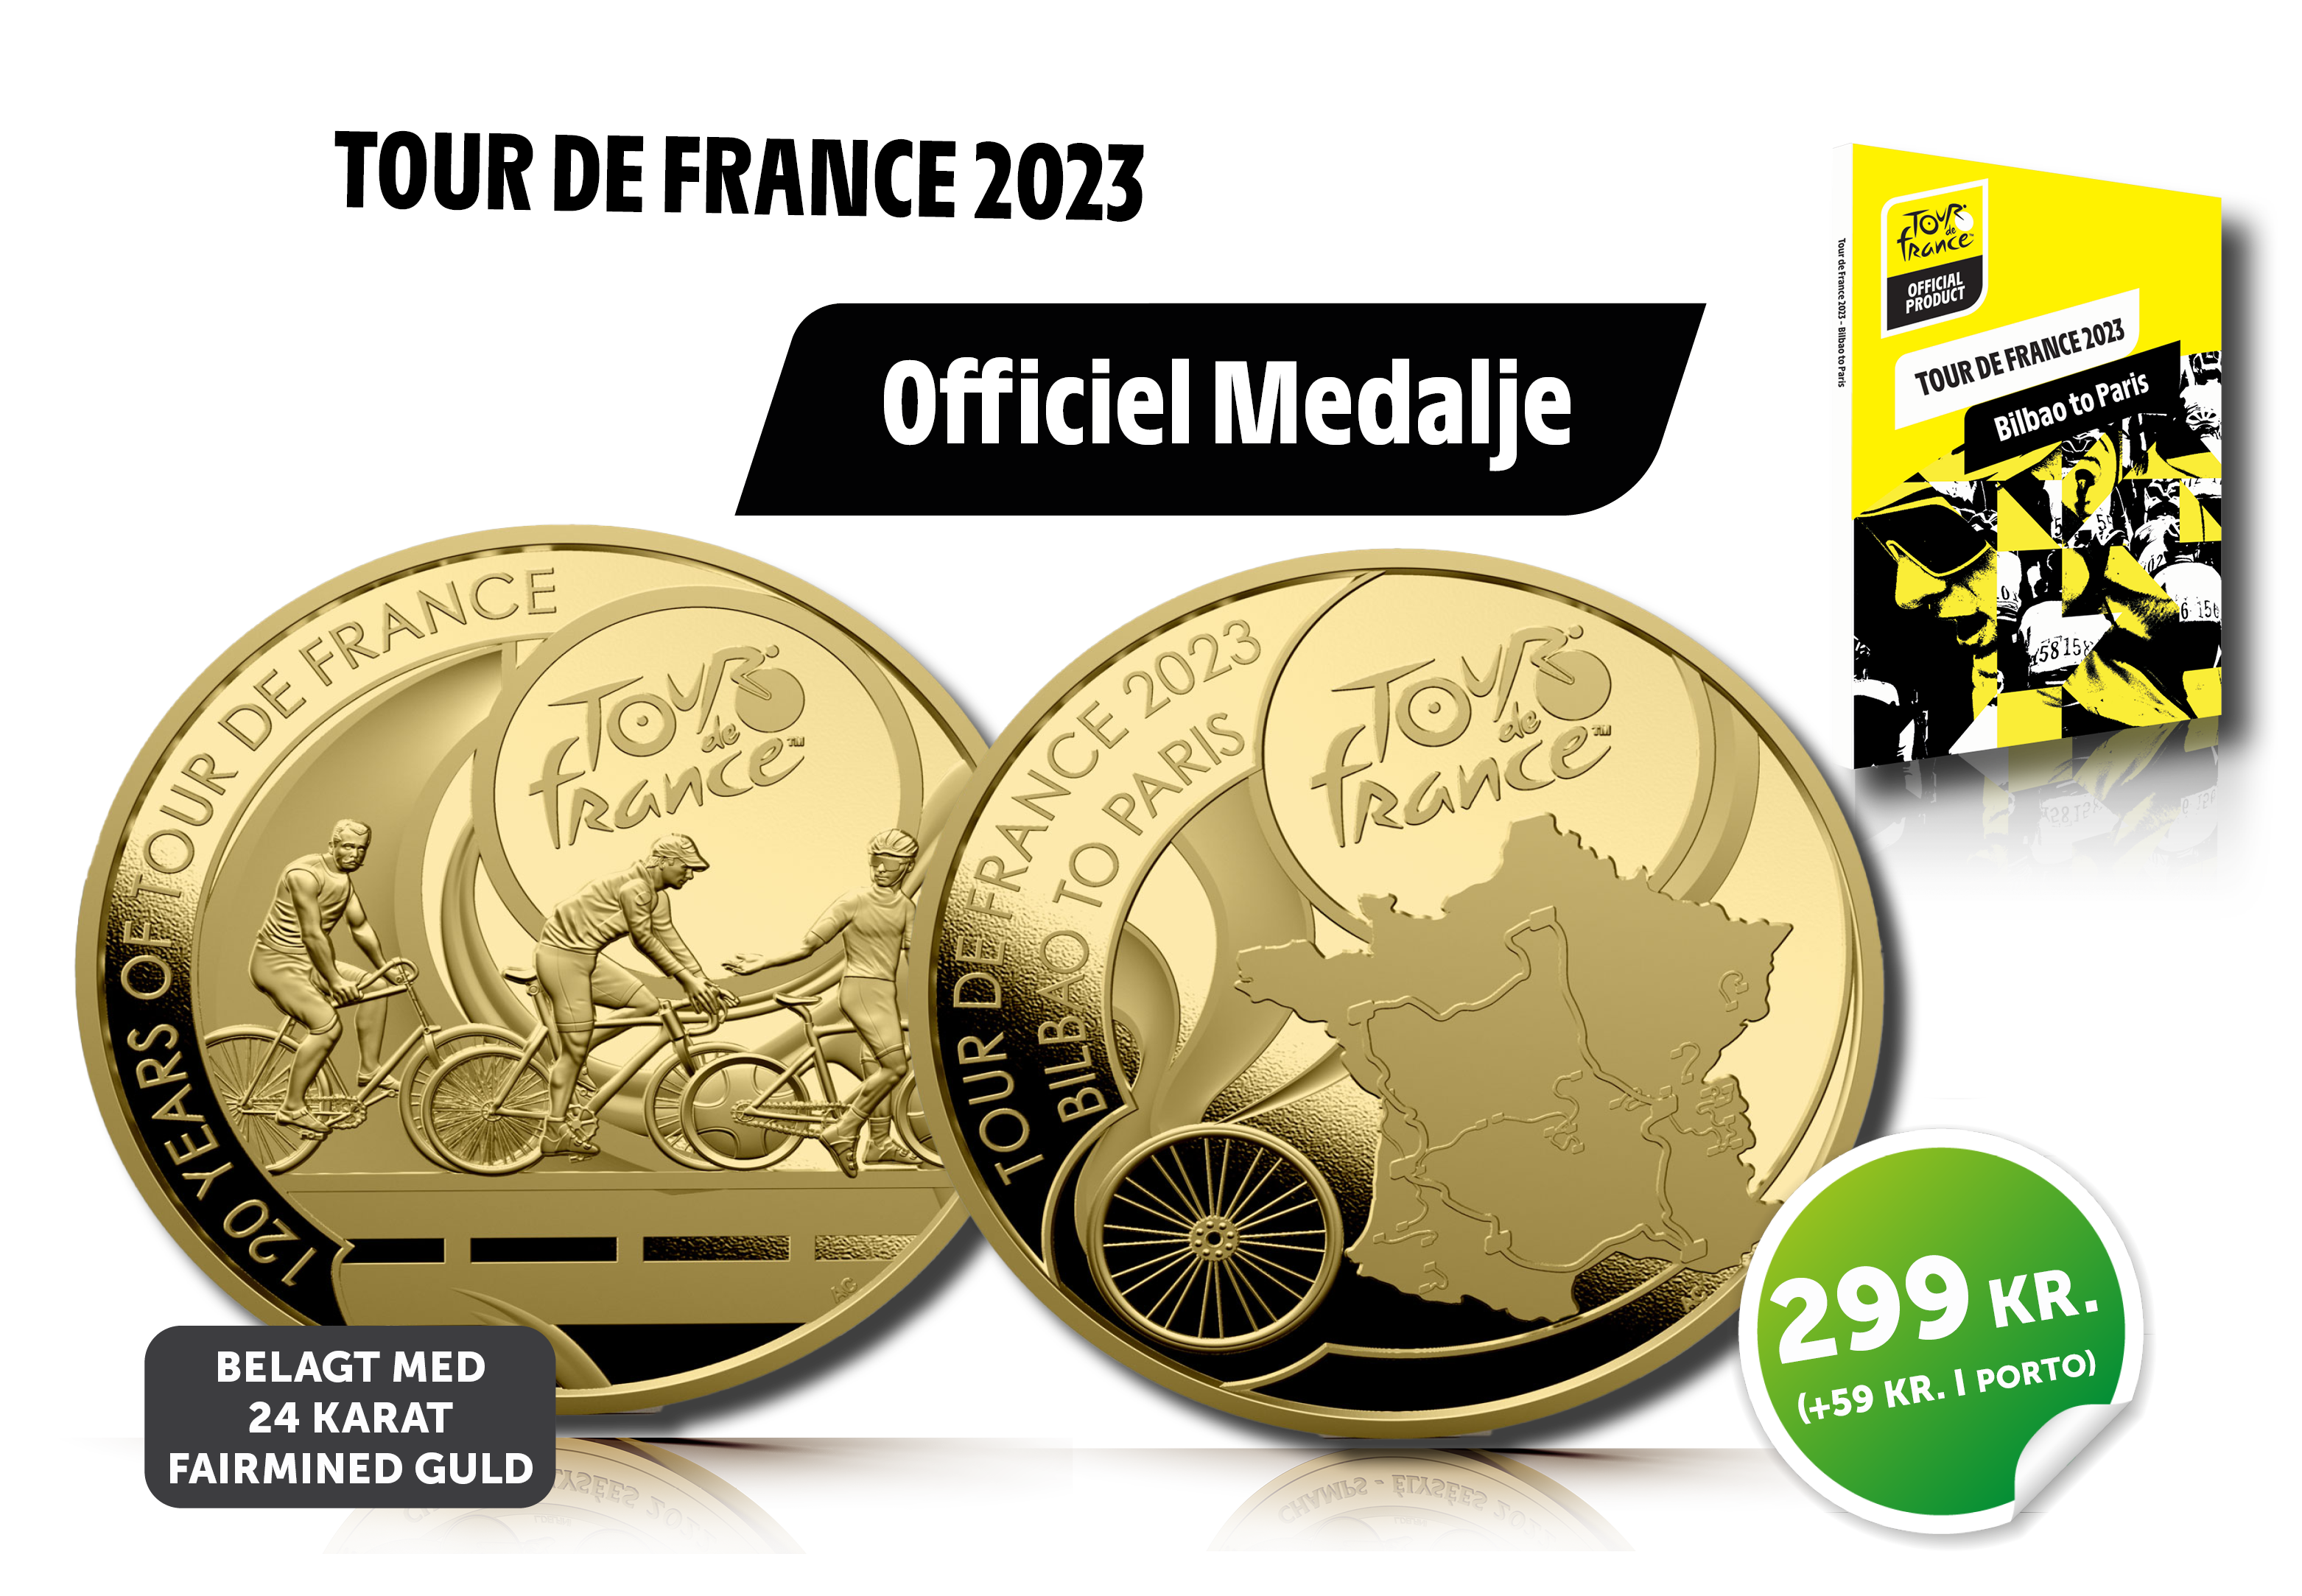 Officiel Tour de France medalje - belagt med 24 karat fairmined guld